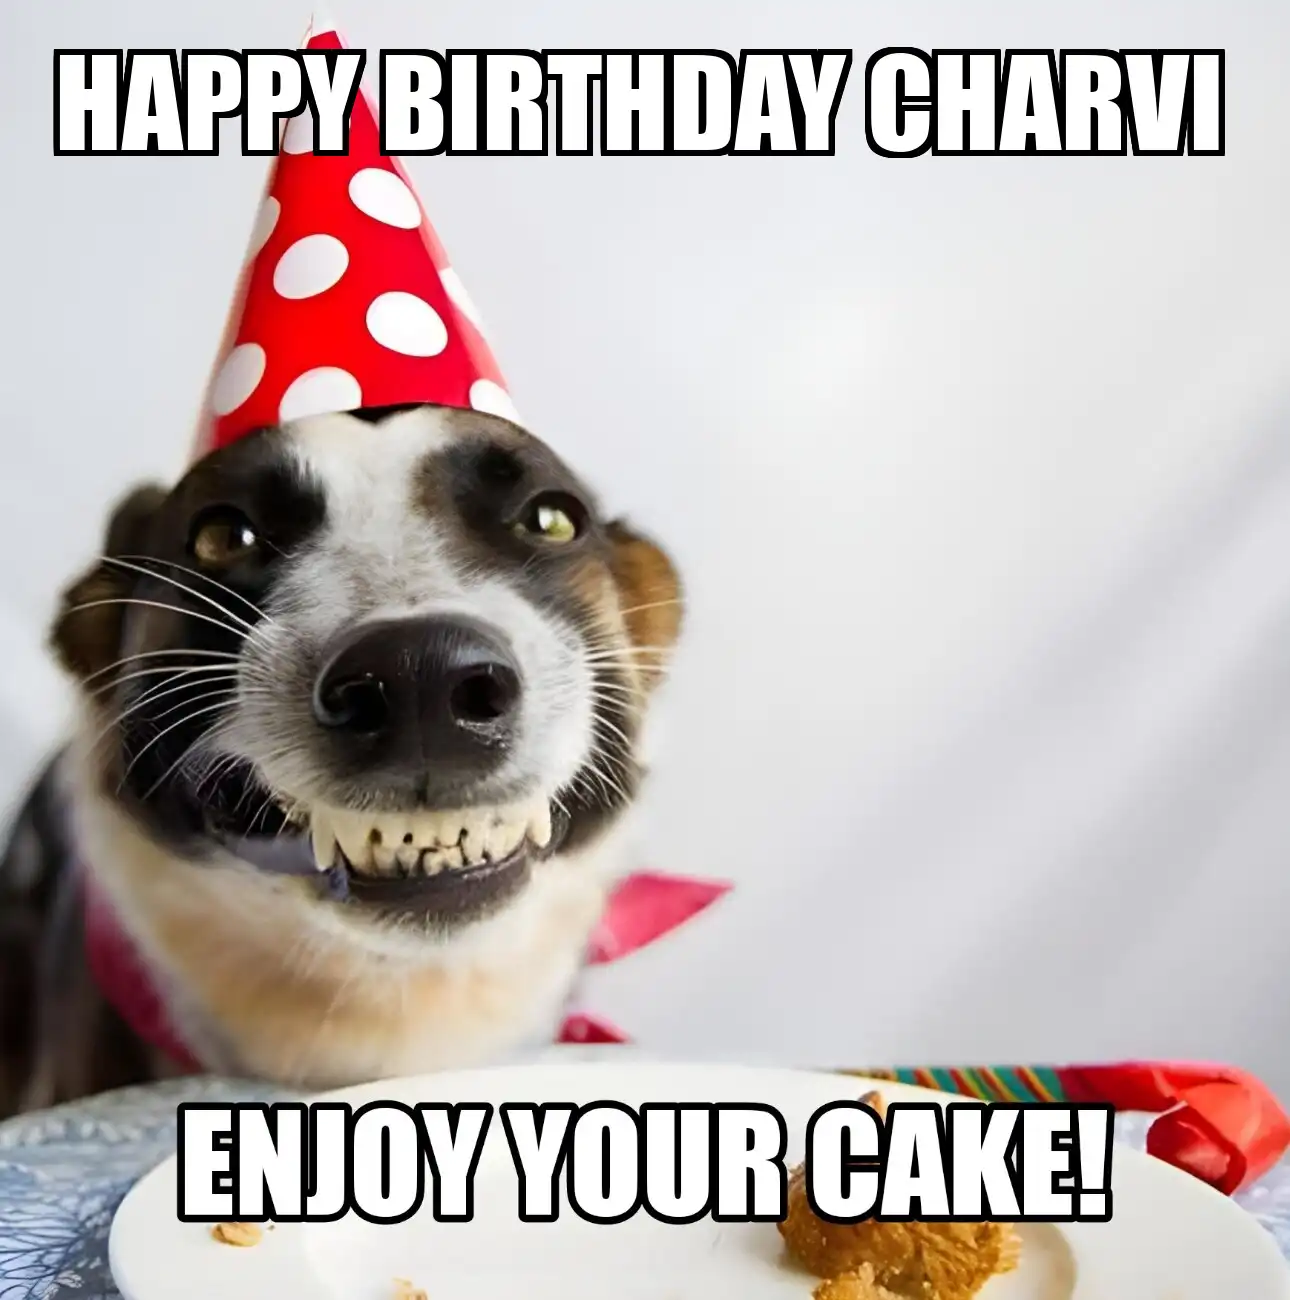 Happy Birthday Charvi Enjoy Your Cake Dog Meme